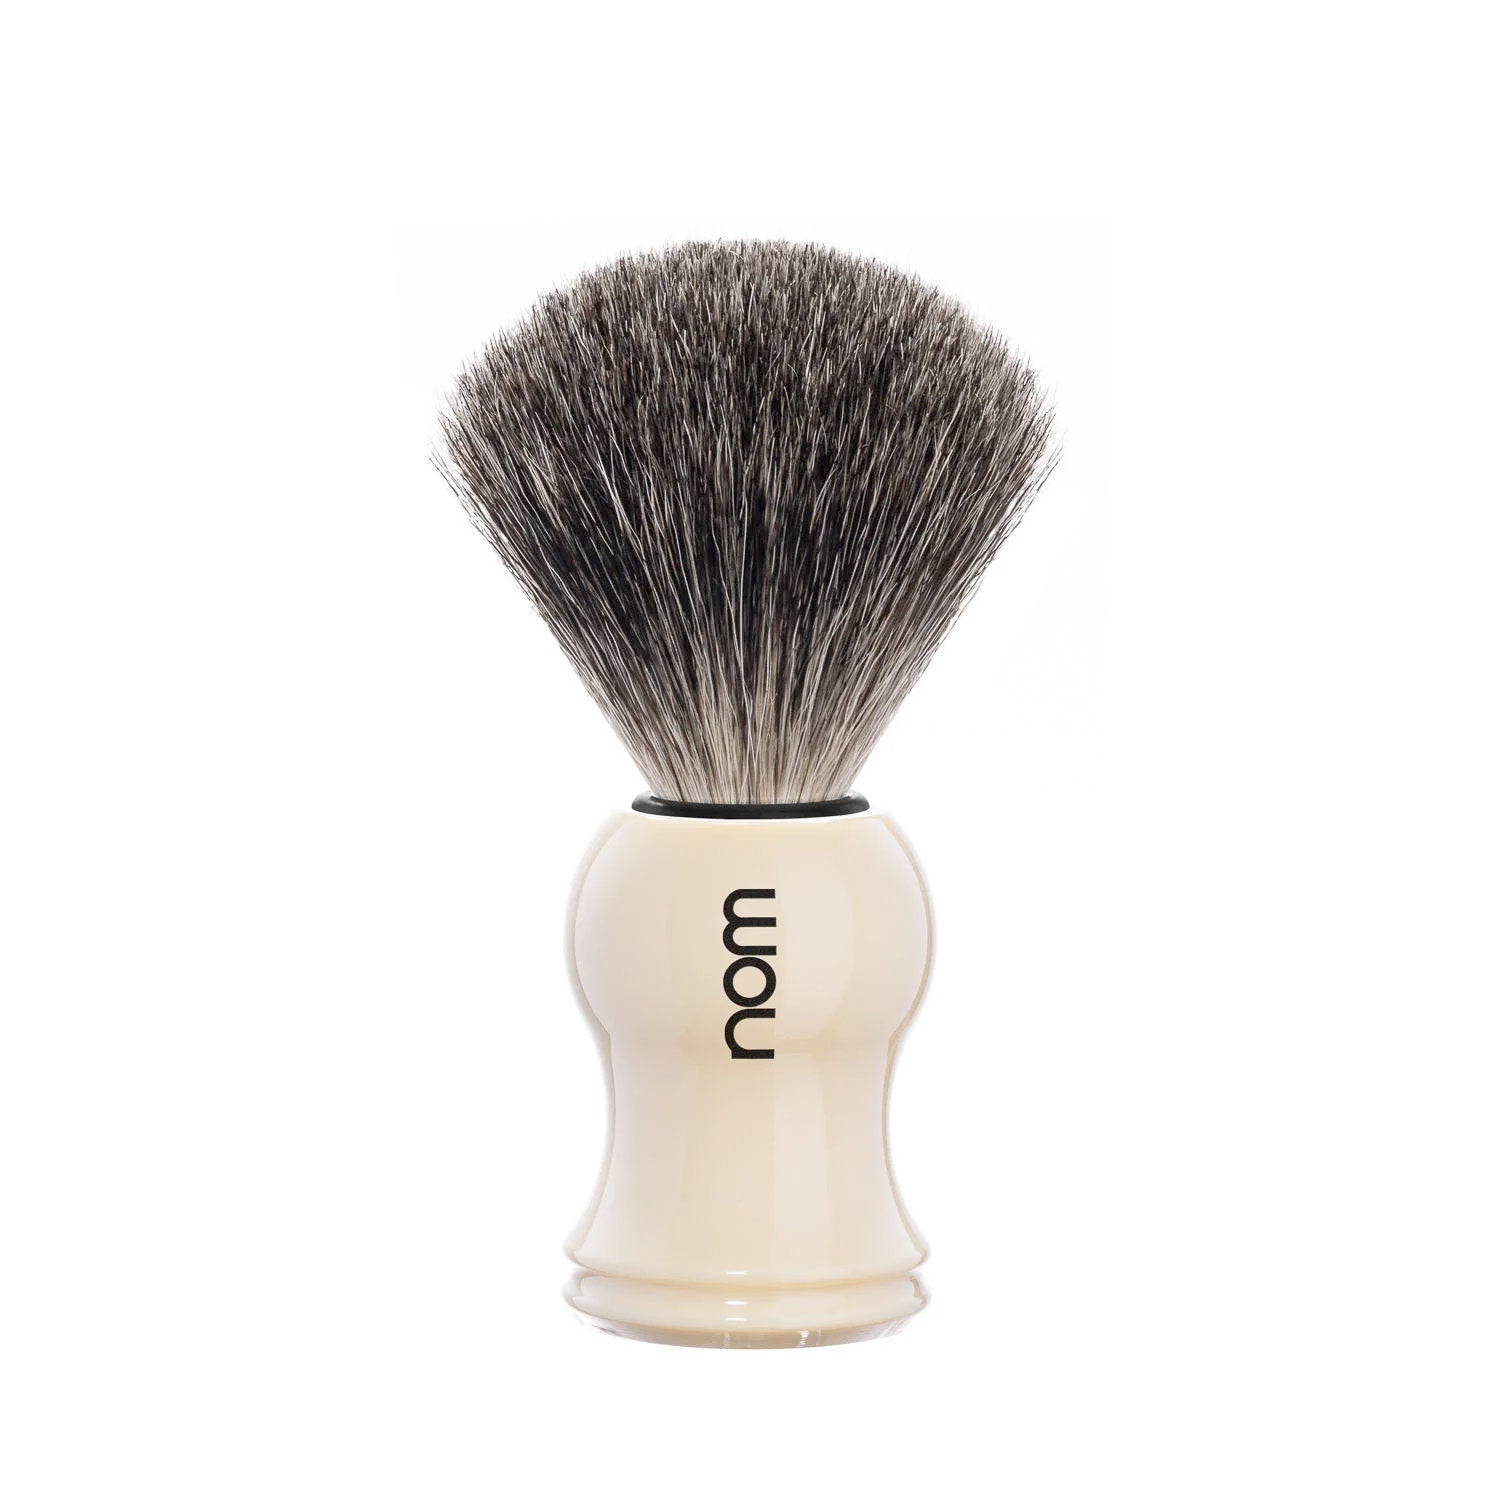 nom GUSTAV Pure Badger Shaving Brush in Cream